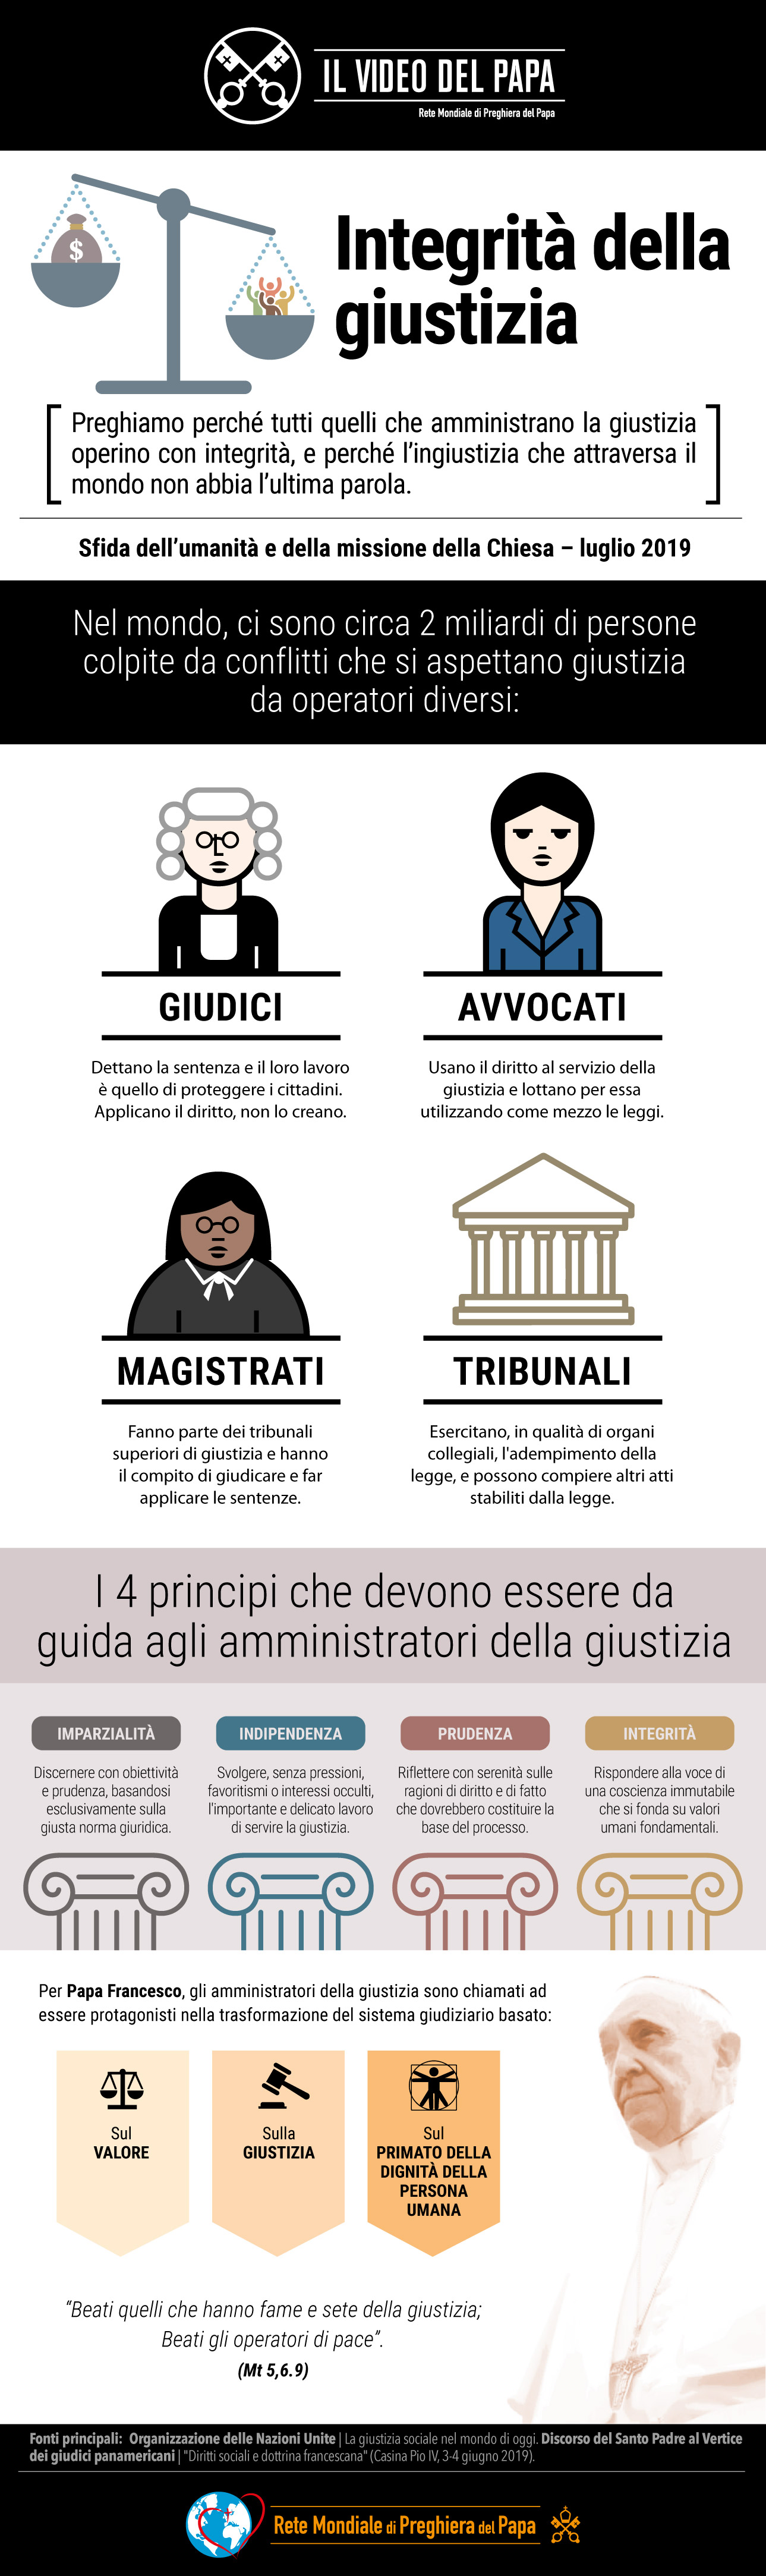 infografia-tpv-7-2019-3-it-integritacc80-della-giustizia.jpg